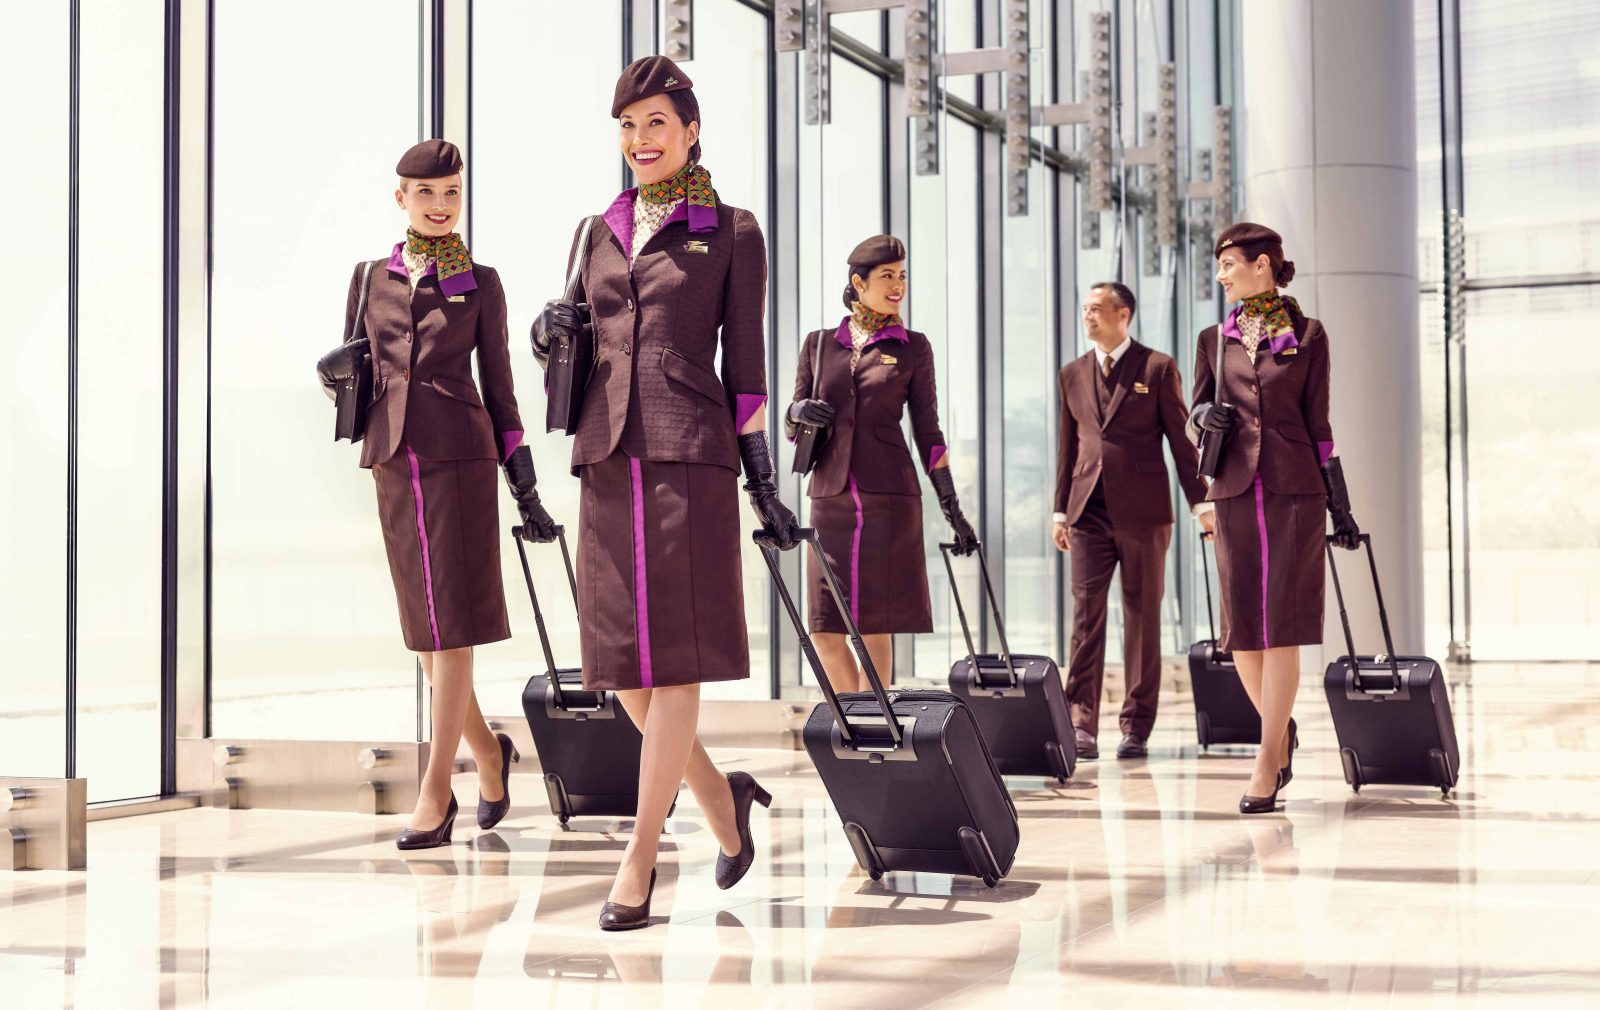 Etihad Airways utsåg den bästa personaltjänsten för ett flygbolag i Mellanöstern